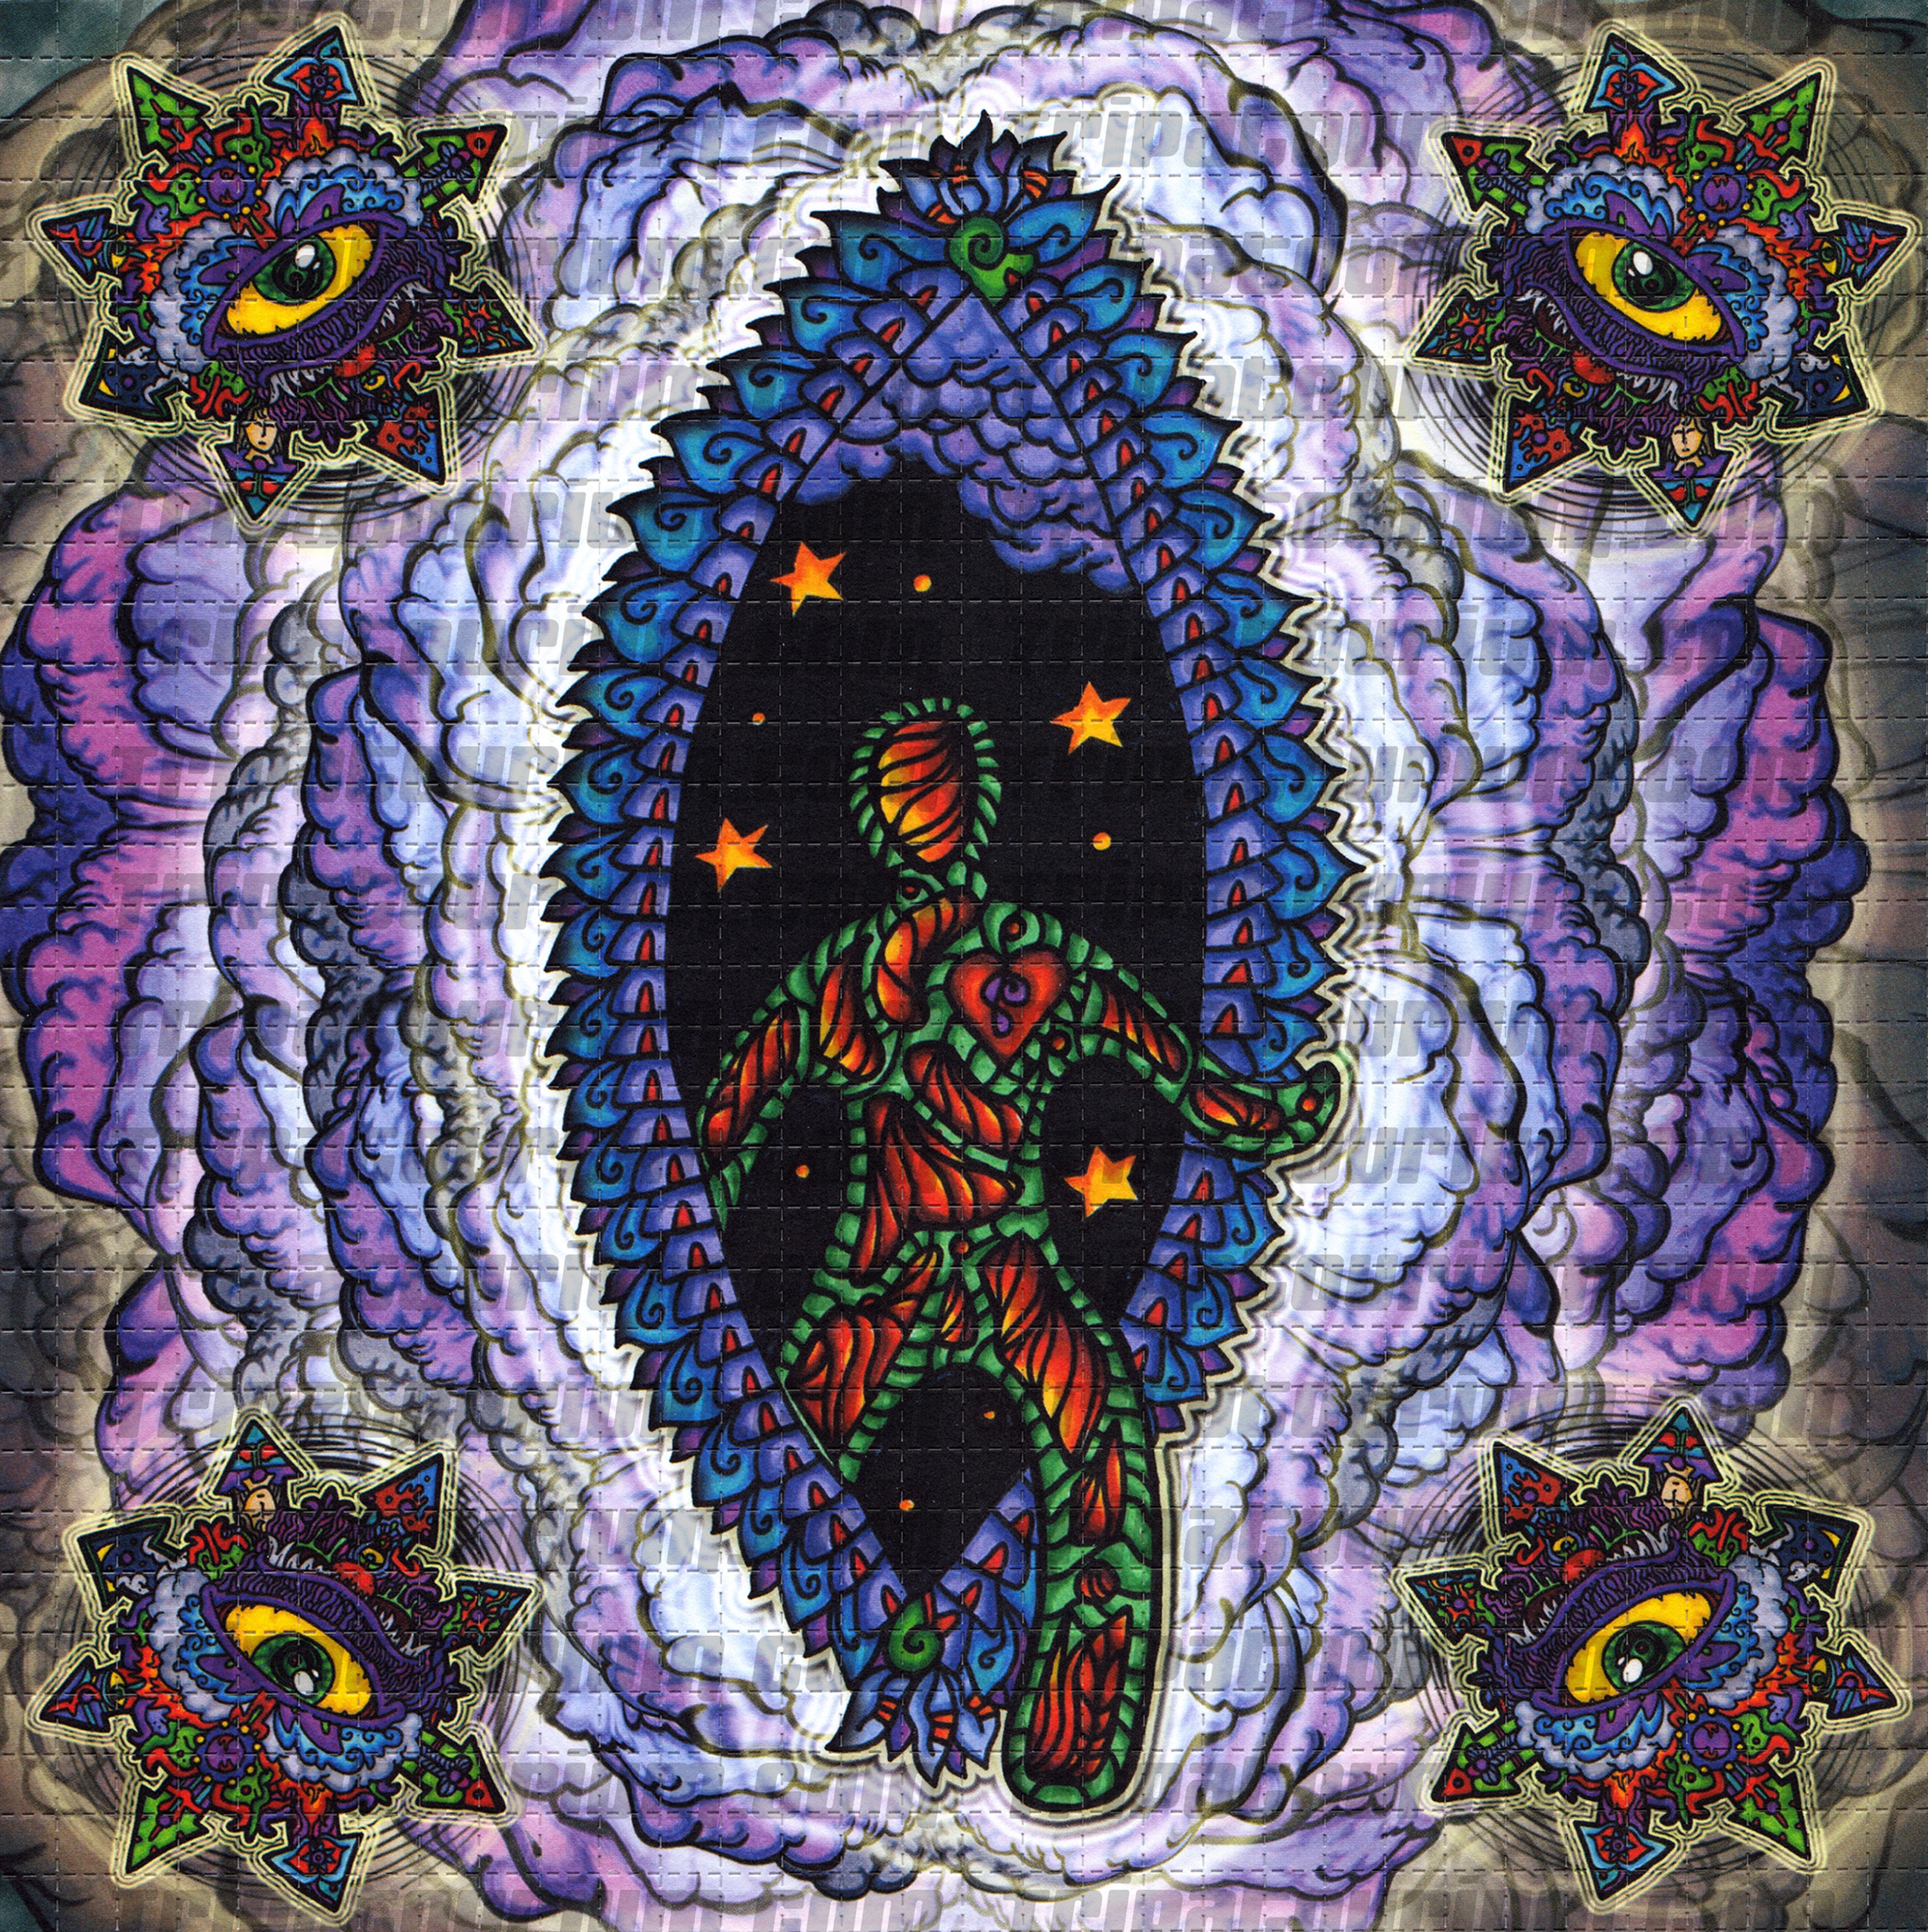 A scan of the LSD Blotter Art Print Blotz by NEMO